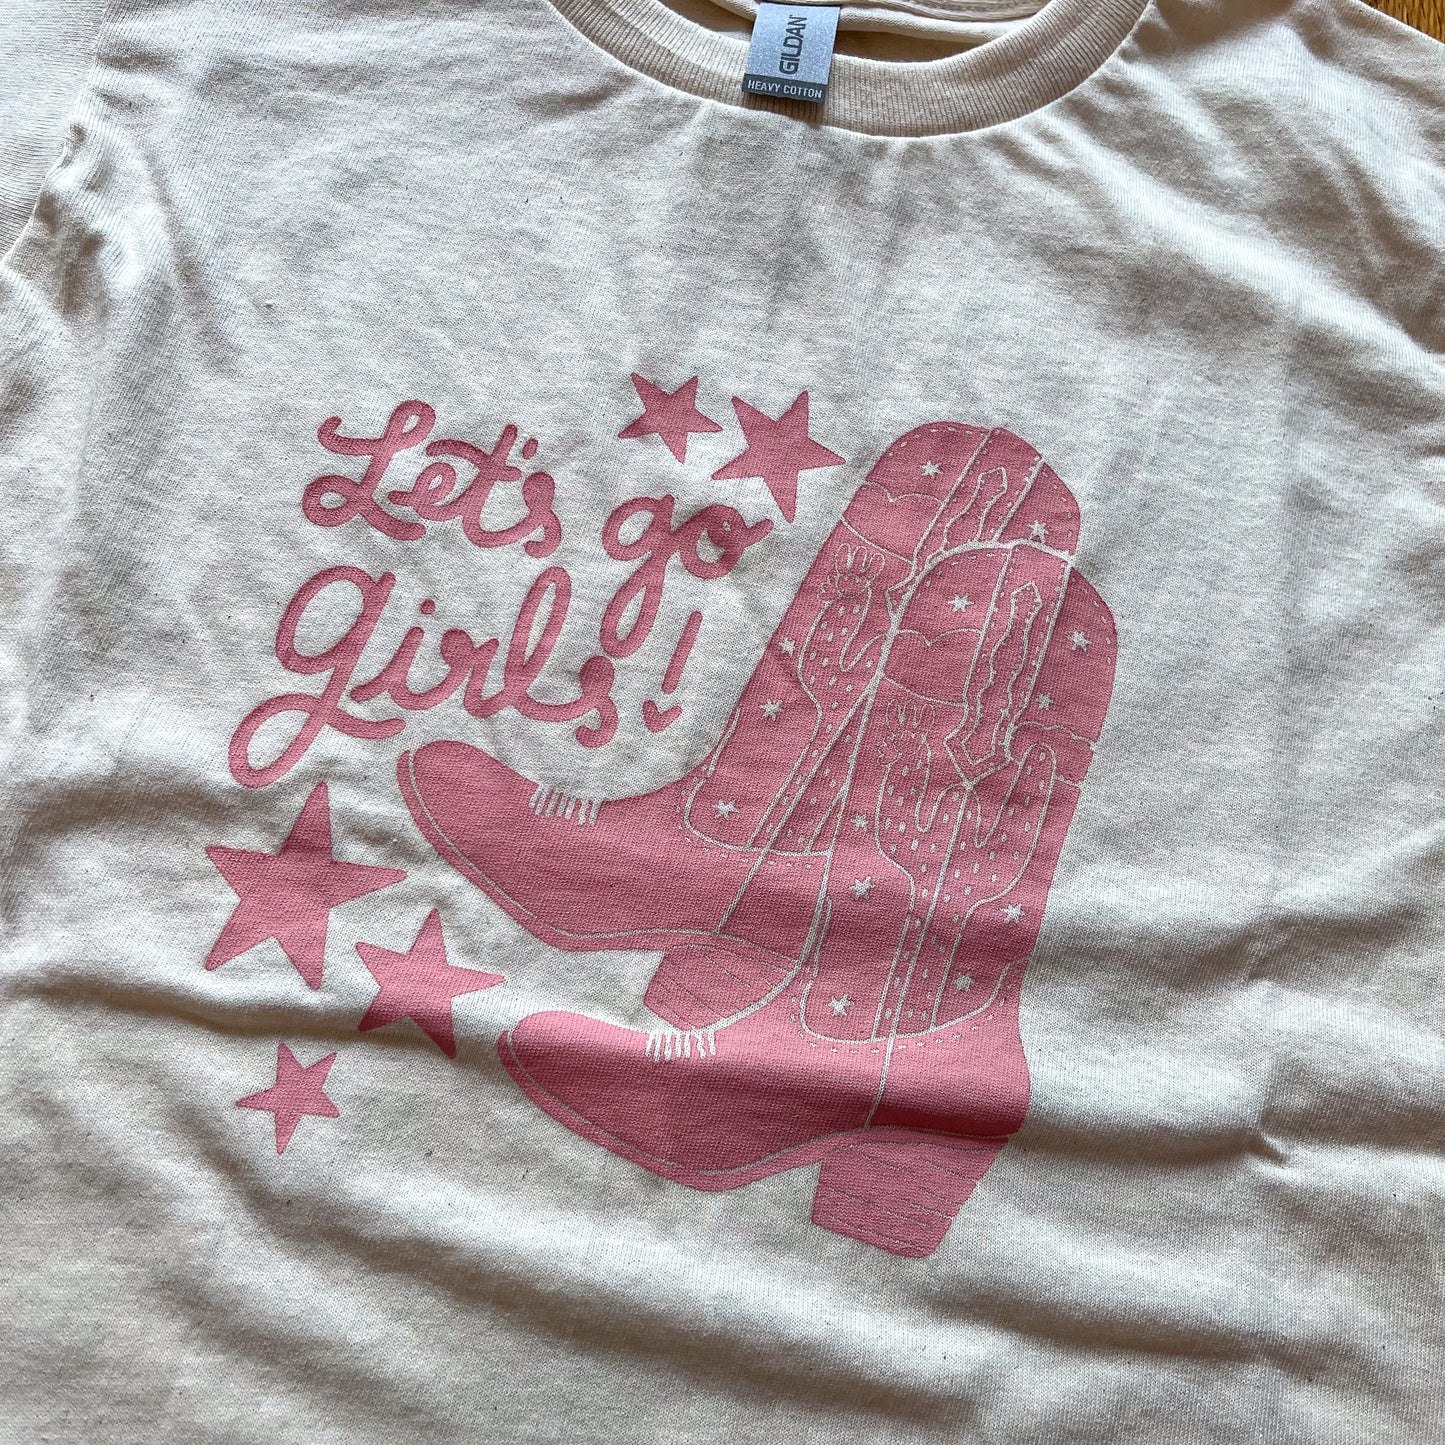 Let's Go Girls (Kids) T-Shirt